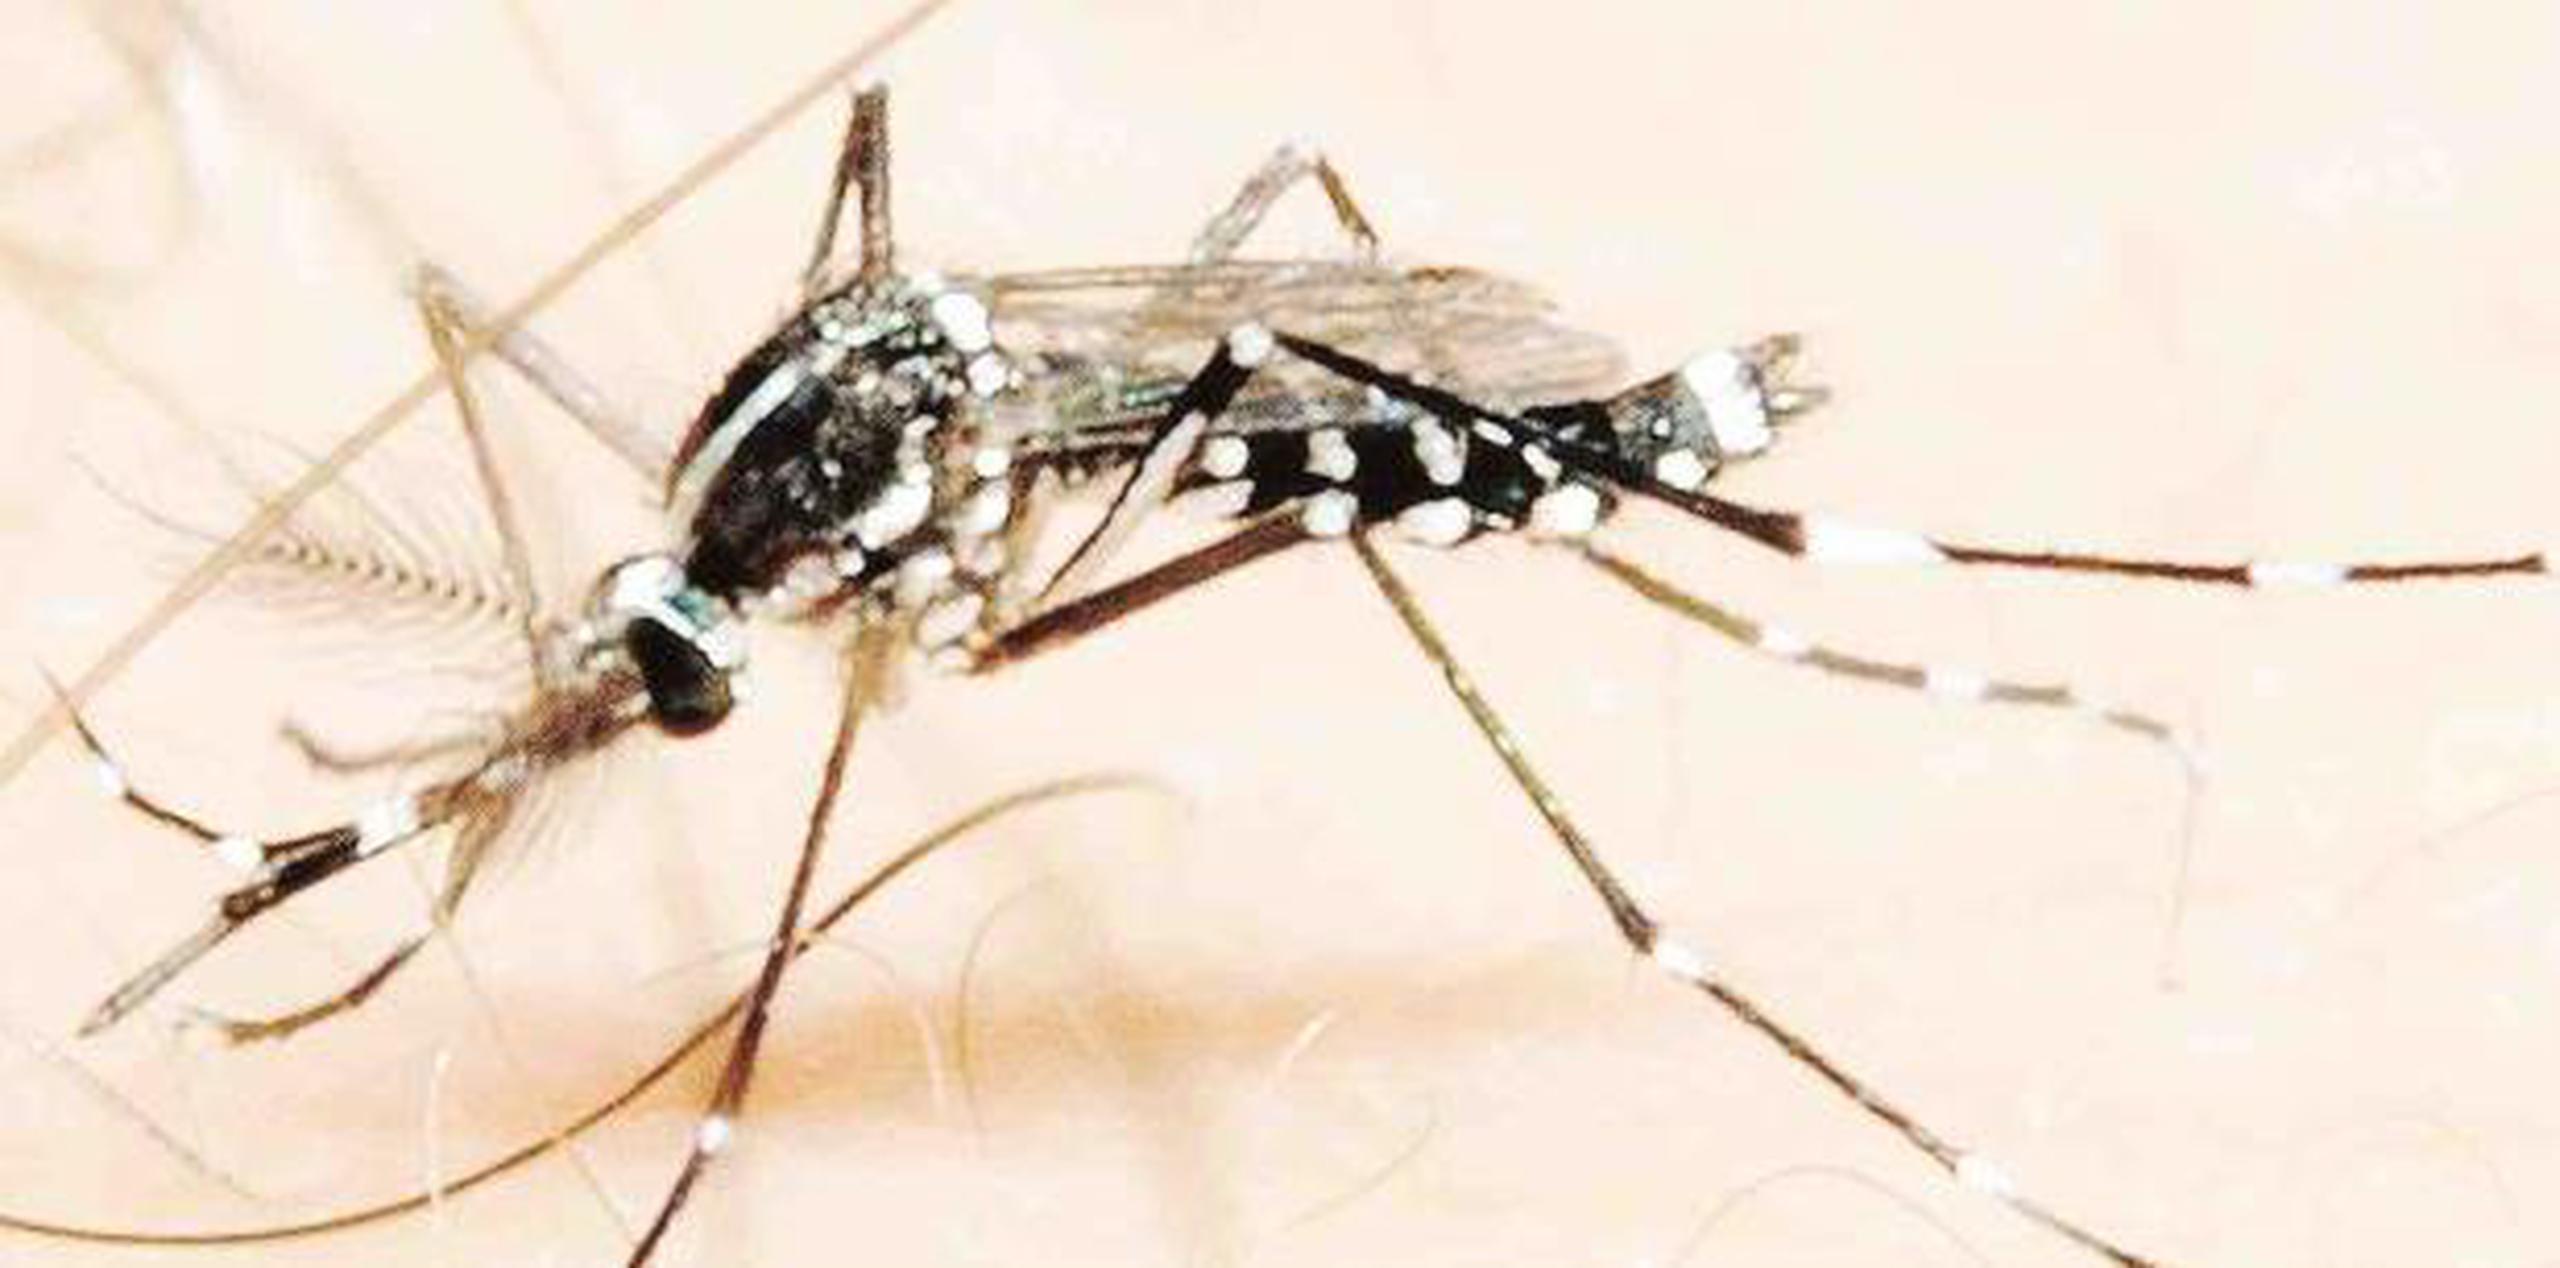 "Toda aquella persona que piense viajar, verifique antes si hay dengue en el país a visitar. Si en efecto, hay dengue, utilice siempre repelentes de mosquitos", dijo la epidemióloga del Estado, la doctora Carmen Deseda. (archivo)